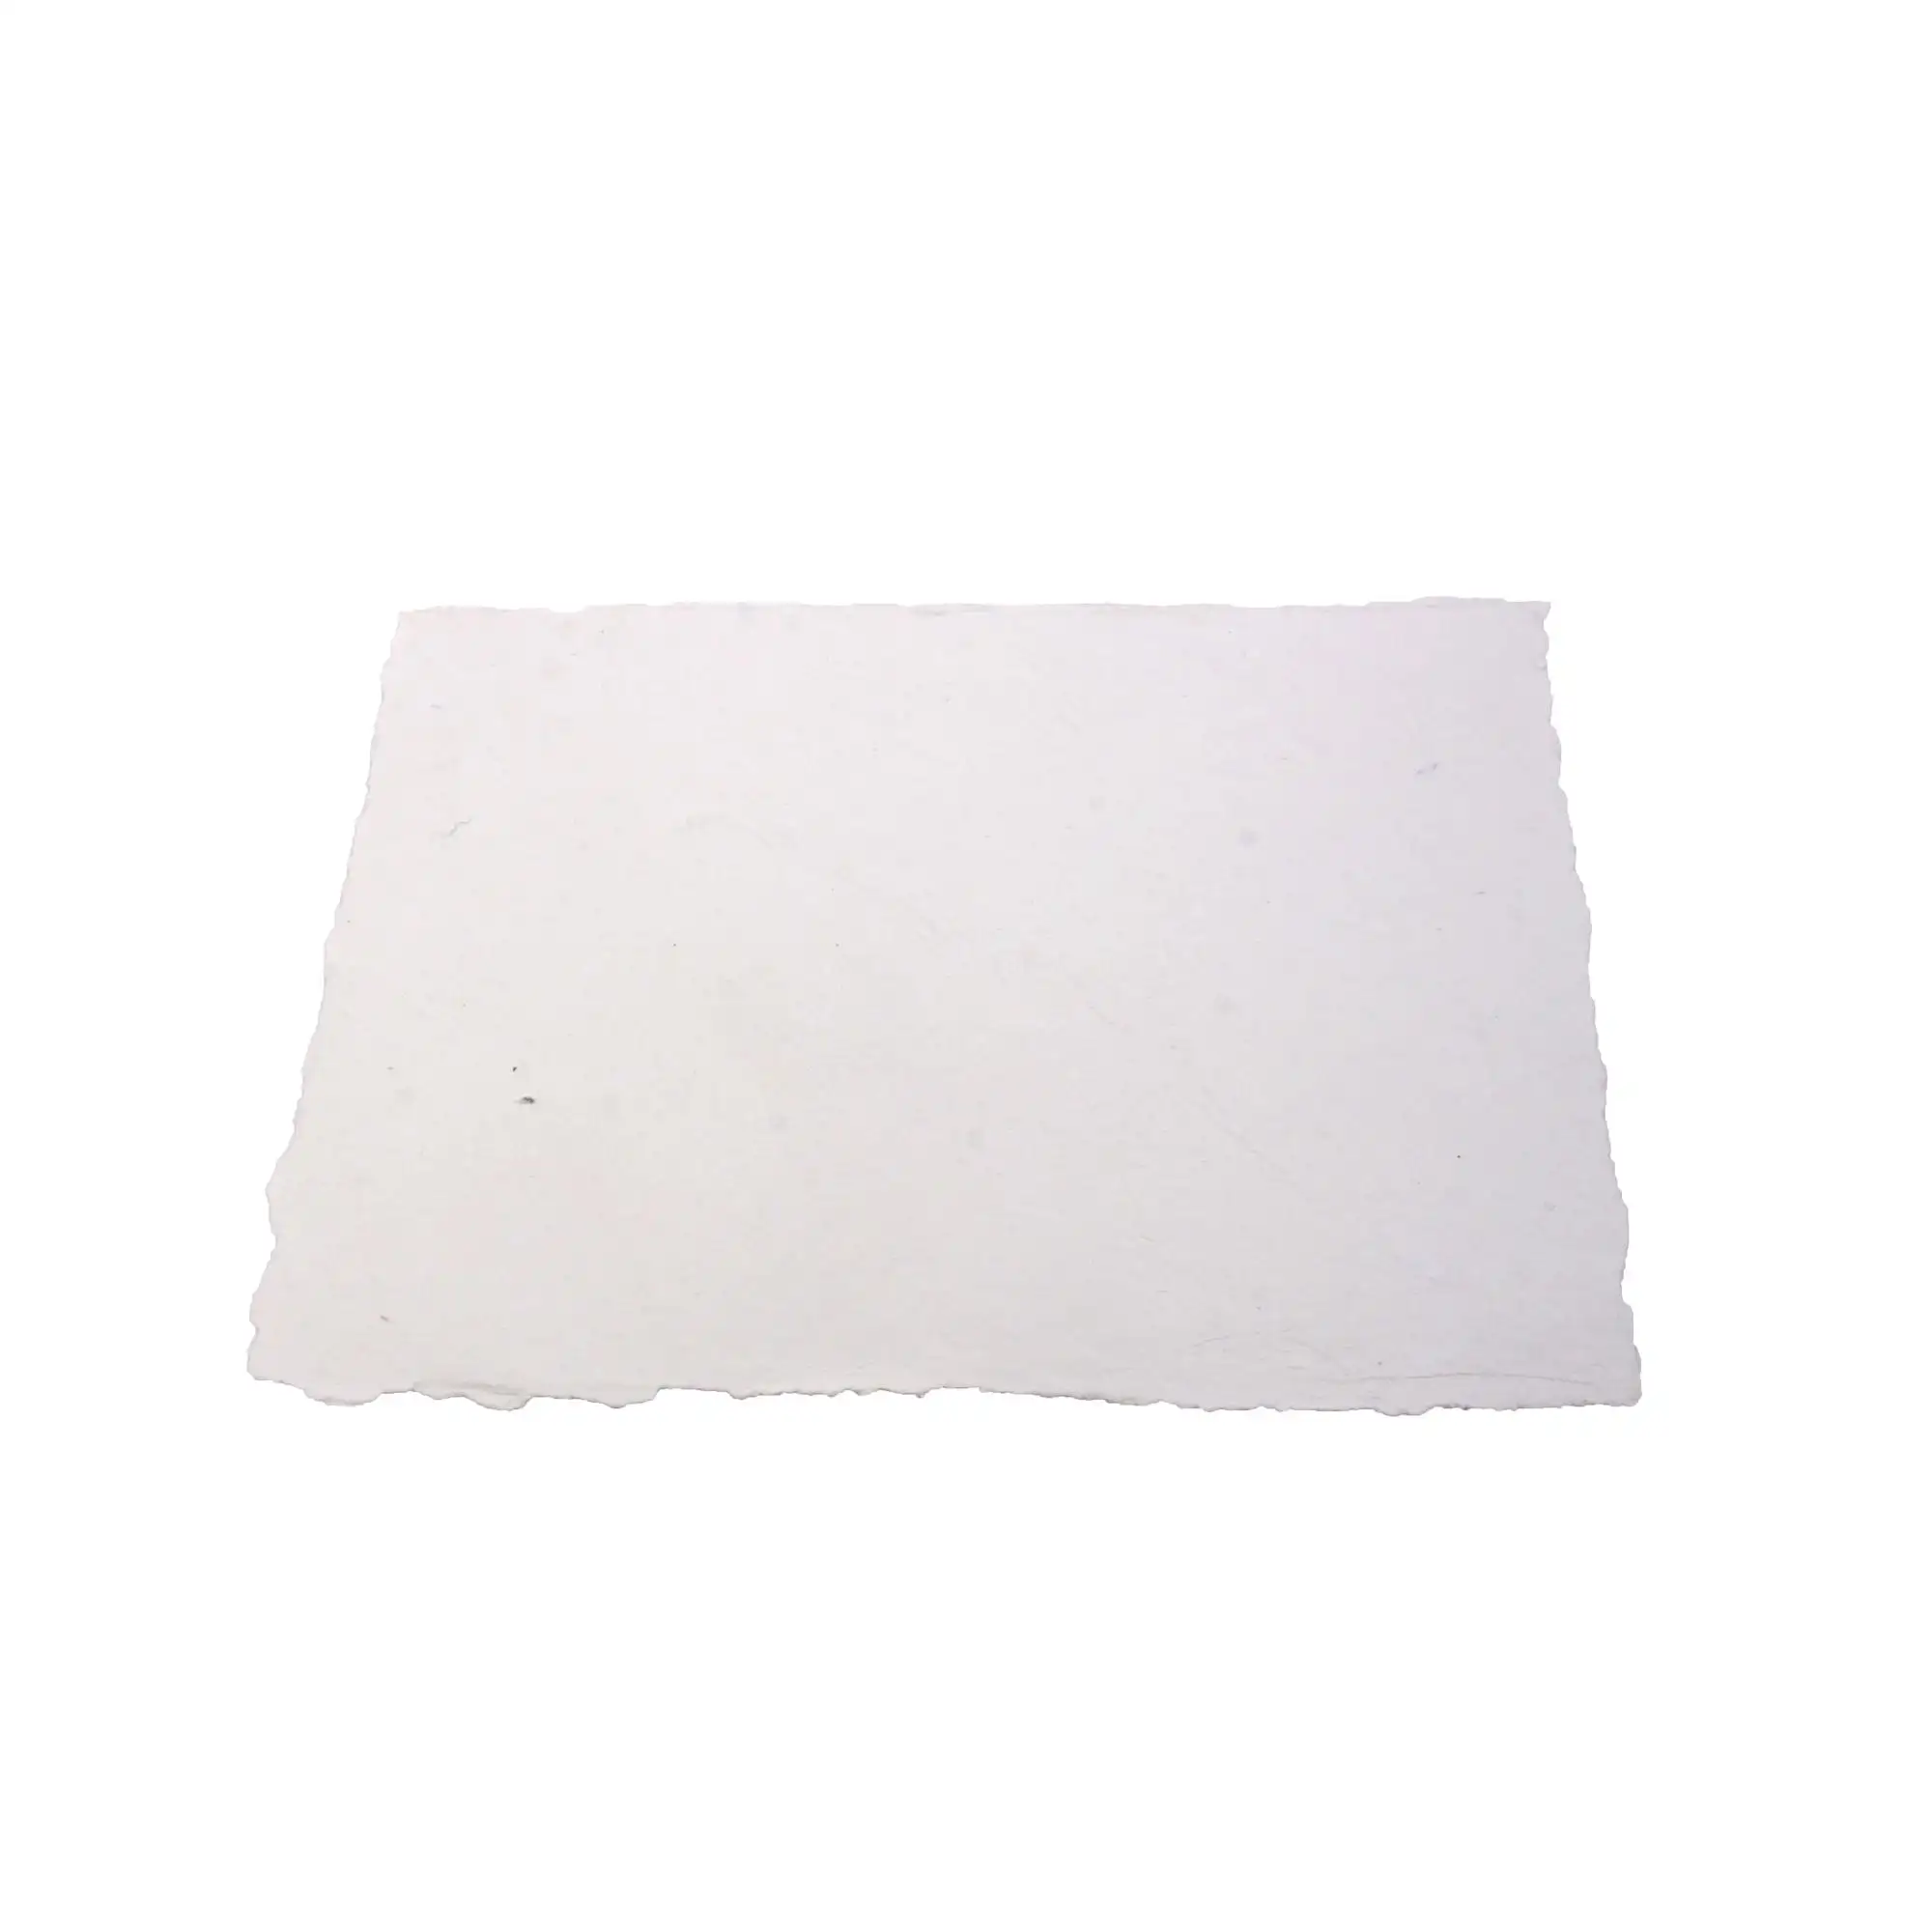 Deckle Edge Büttenpapier Leere Seite für Einladung Letter pres Stationäres Papier Weißes Papier aus recyceltem Baumwoll lappen mit verbrannter Kante